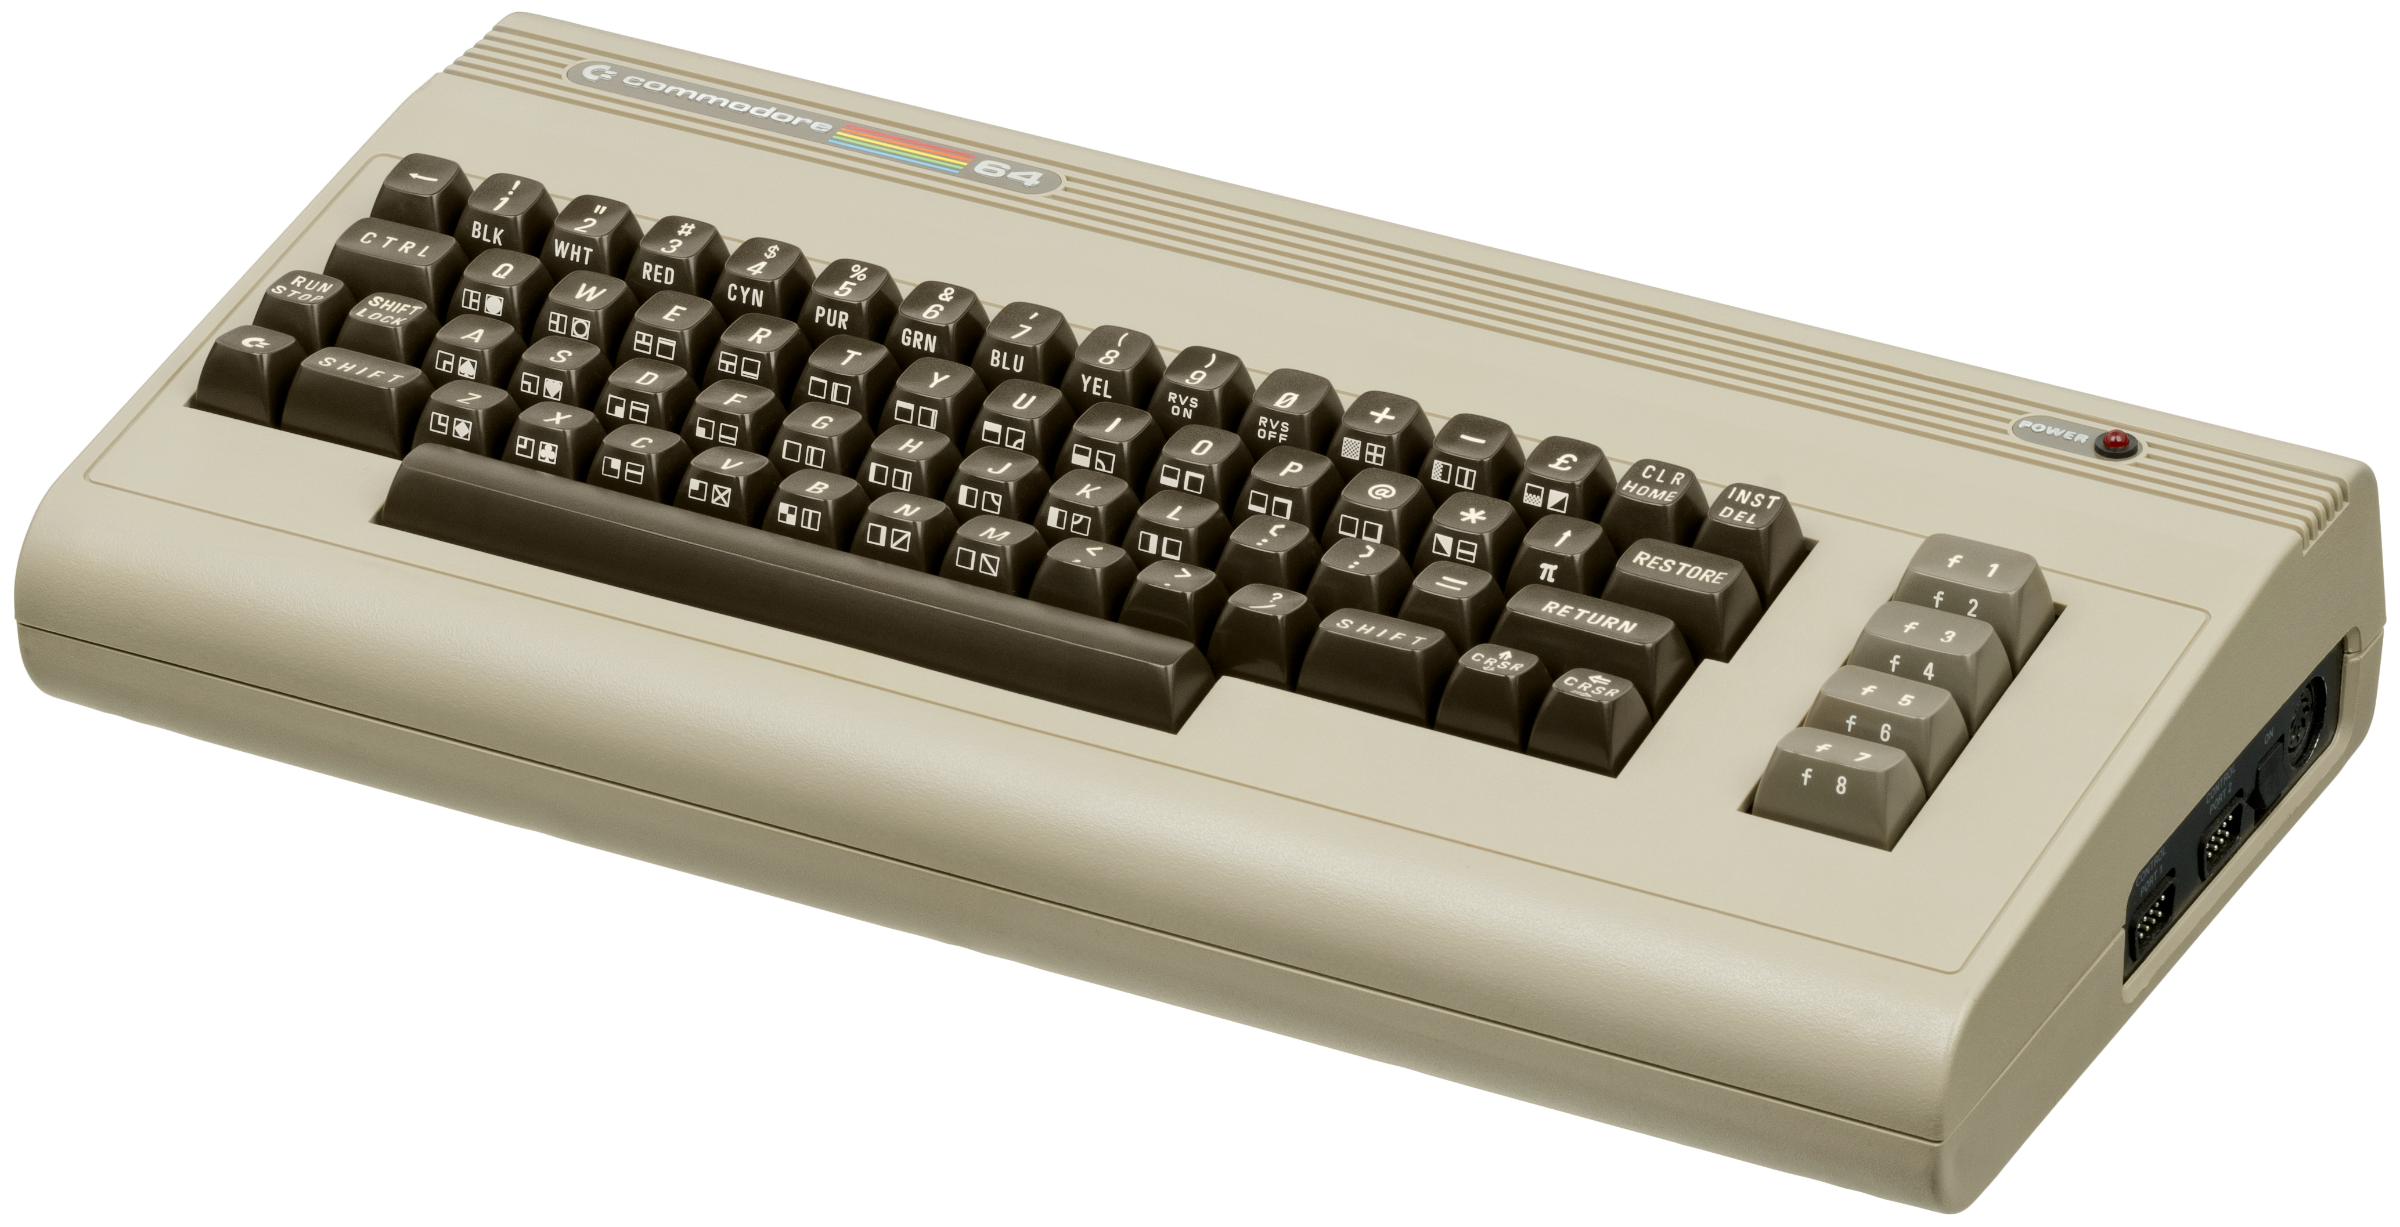 Commodore 64 (Photo: Evan Amos)